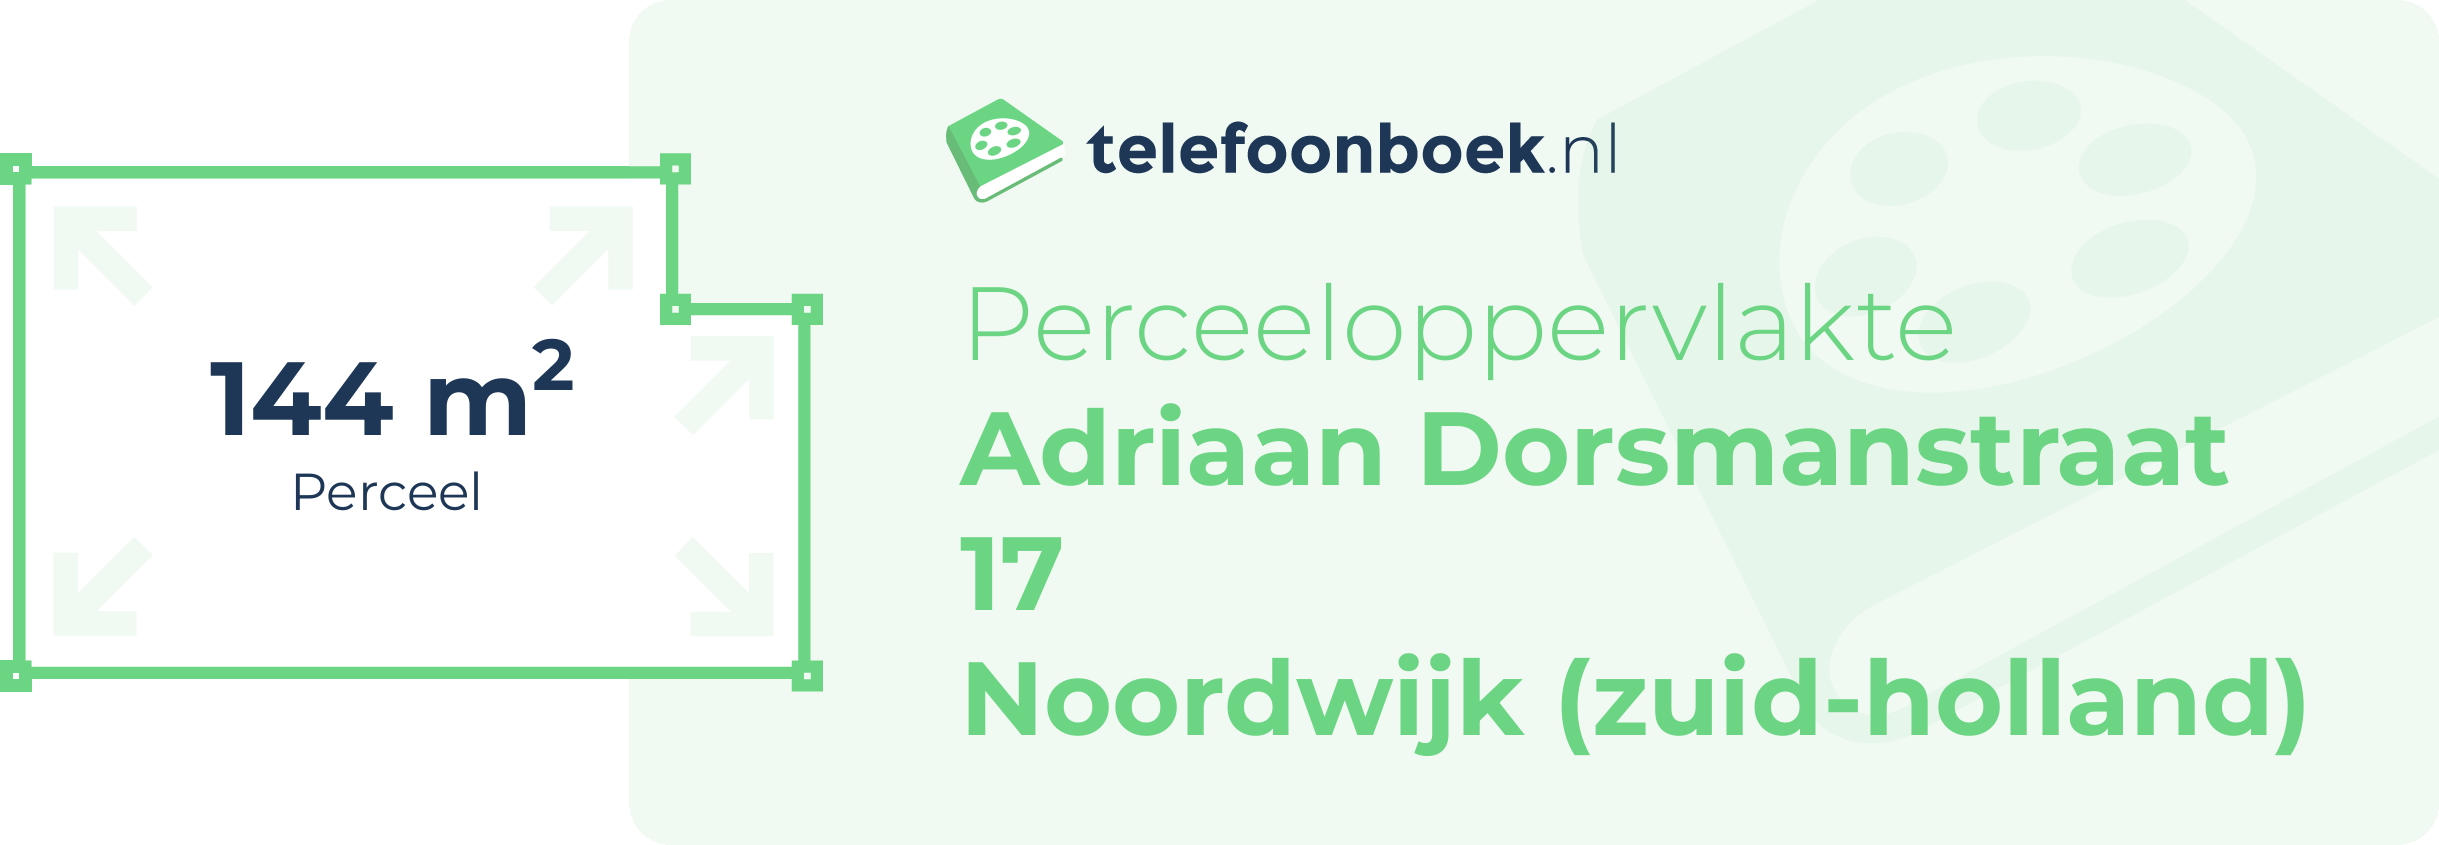 Perceeloppervlakte Adriaan Dorsmanstraat 17 Noordwijk (Zuid-Holland)